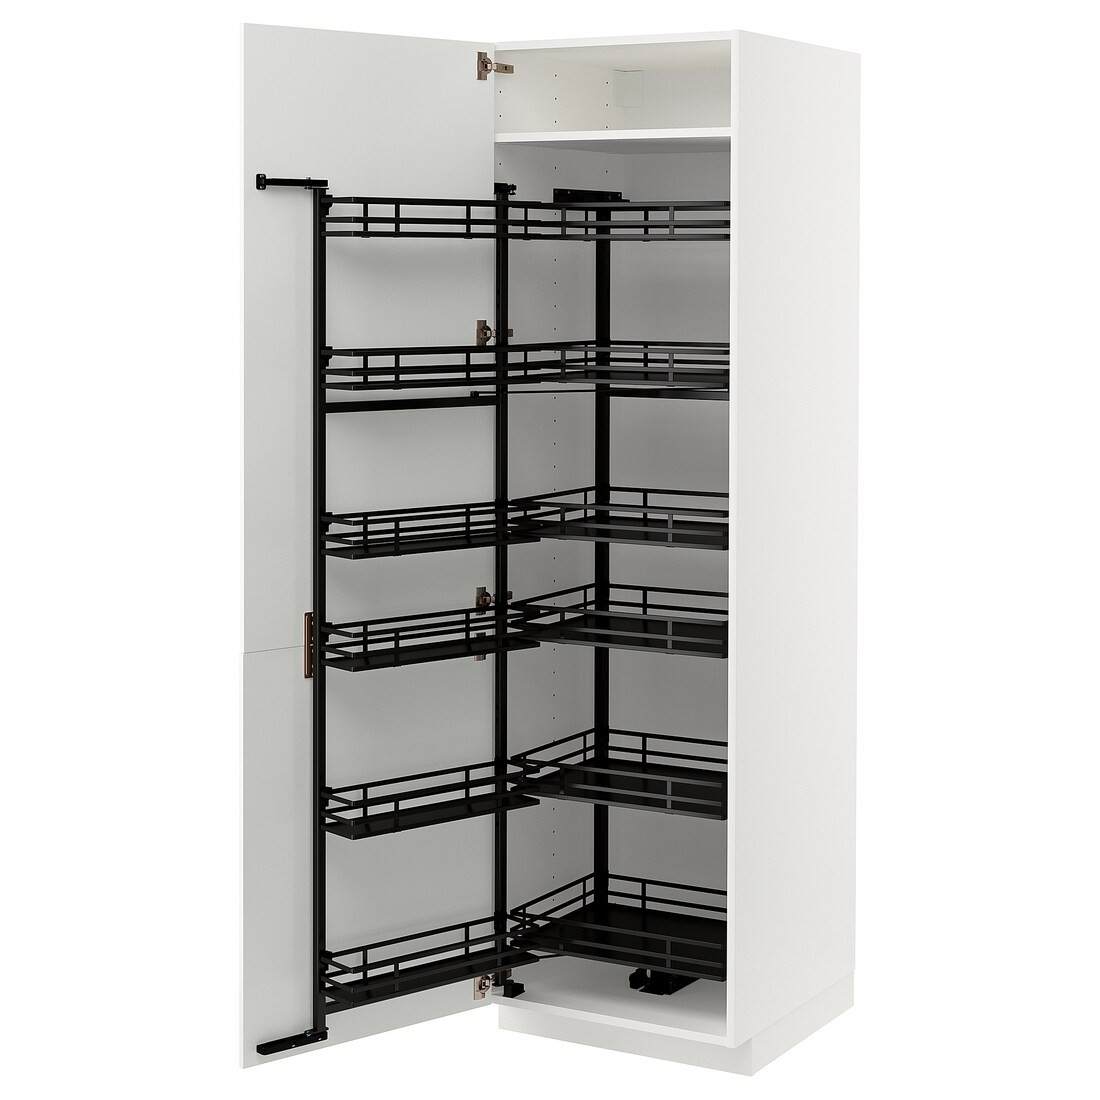 METOD МЕТОД Высокий шкаф с выдвижной кладовой, белый / Stensund белый, 60x60x200 см